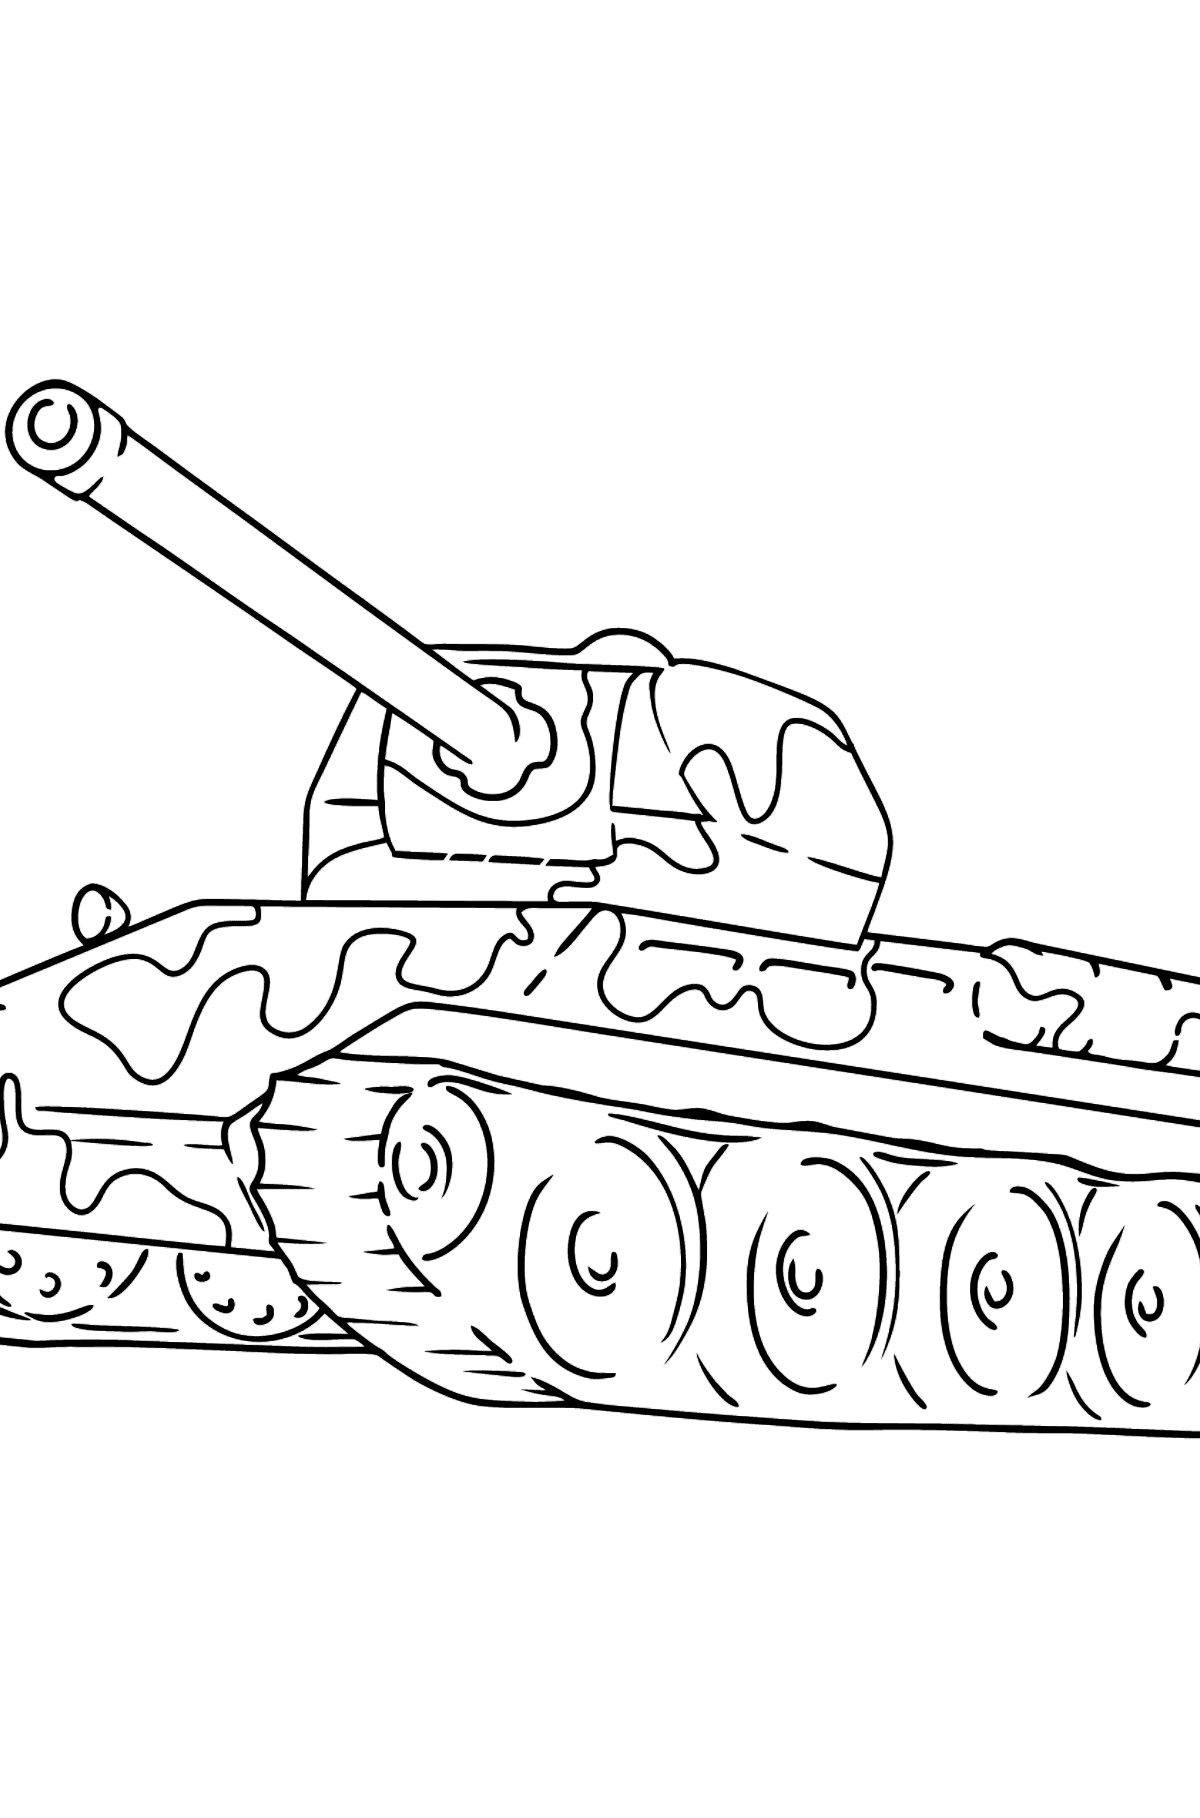 Desenho para colorir - tanque com arma antiaérea - Imagens para Colorir para Crianças